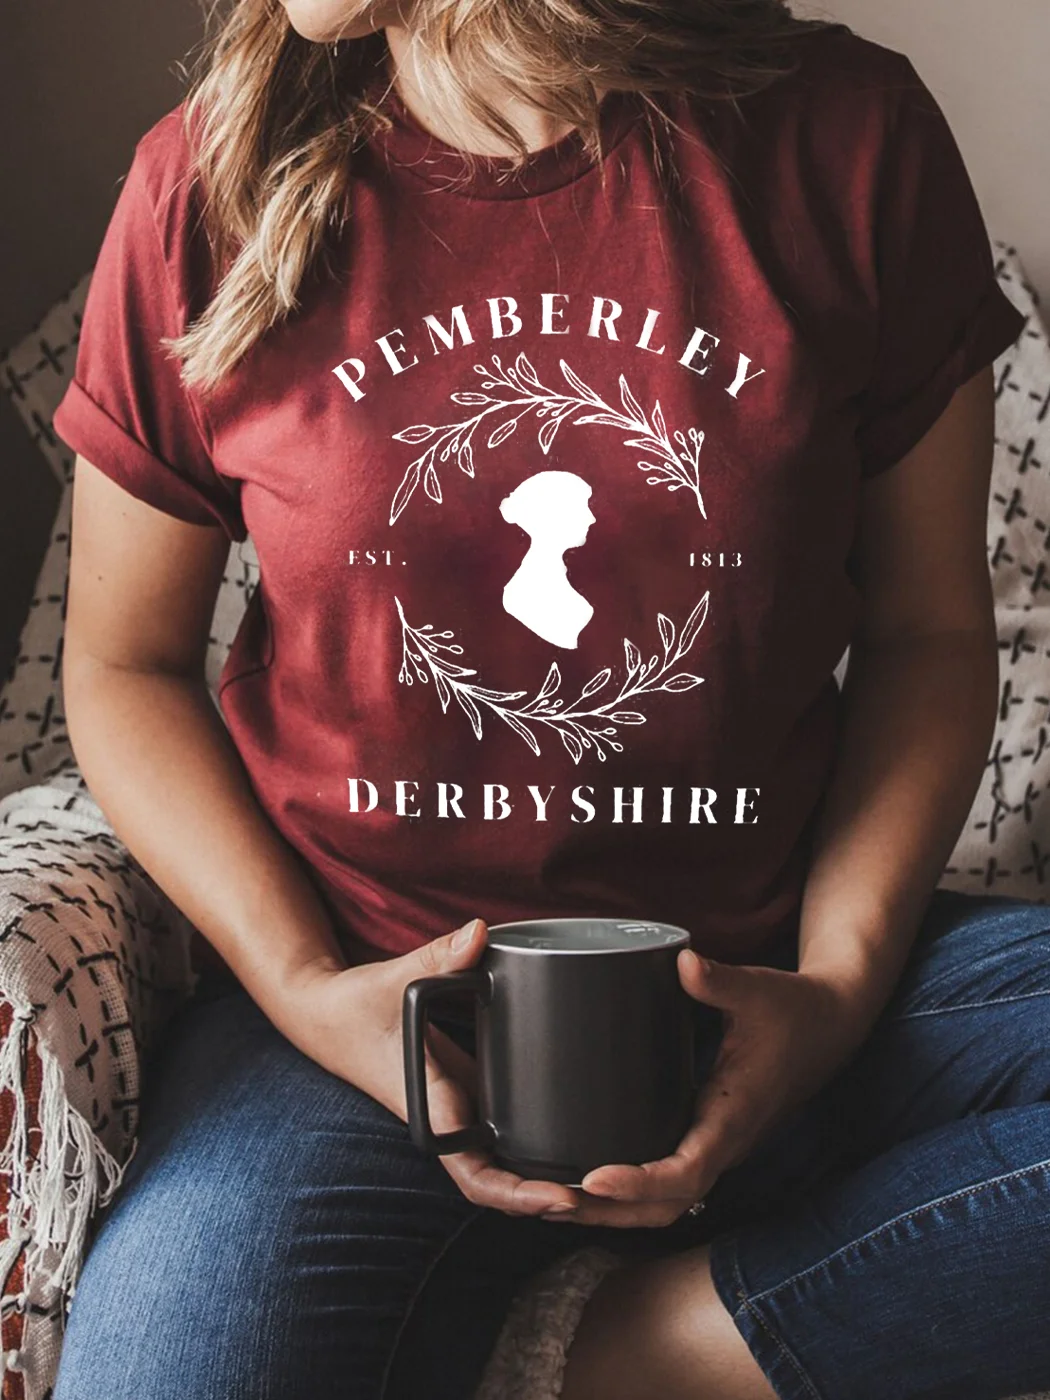 Pemberley T-shirt,Dark Academia Poetic Print T-shirt / DarkAcademias /Darkacademias